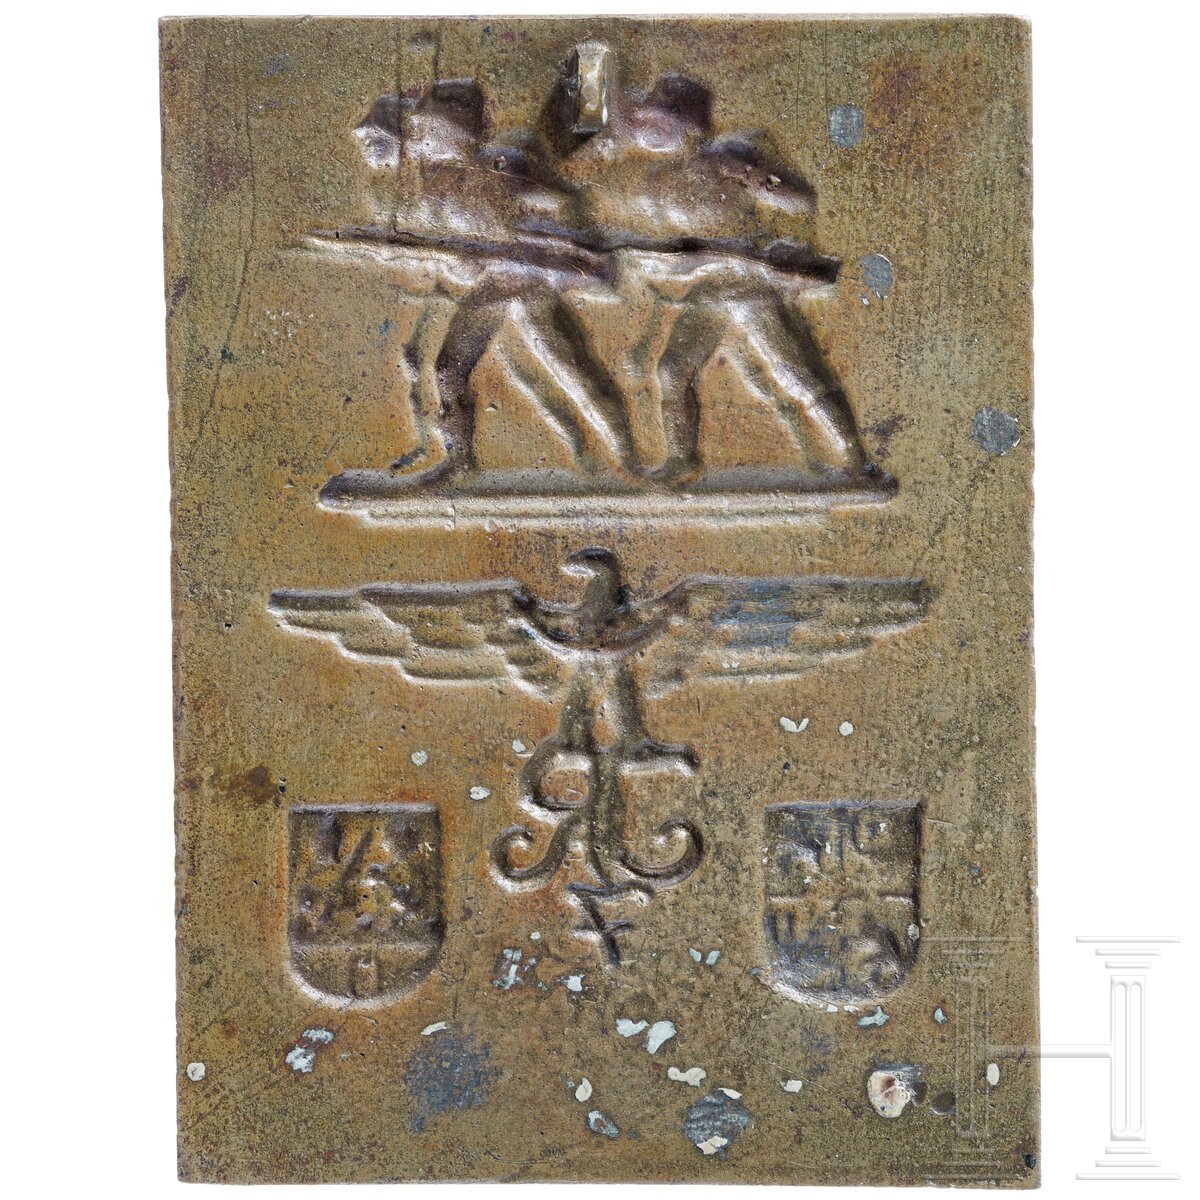 Ehrenplakette des Infanterie-Regiments 7 "Schweidnitz" - Image 2 of 3